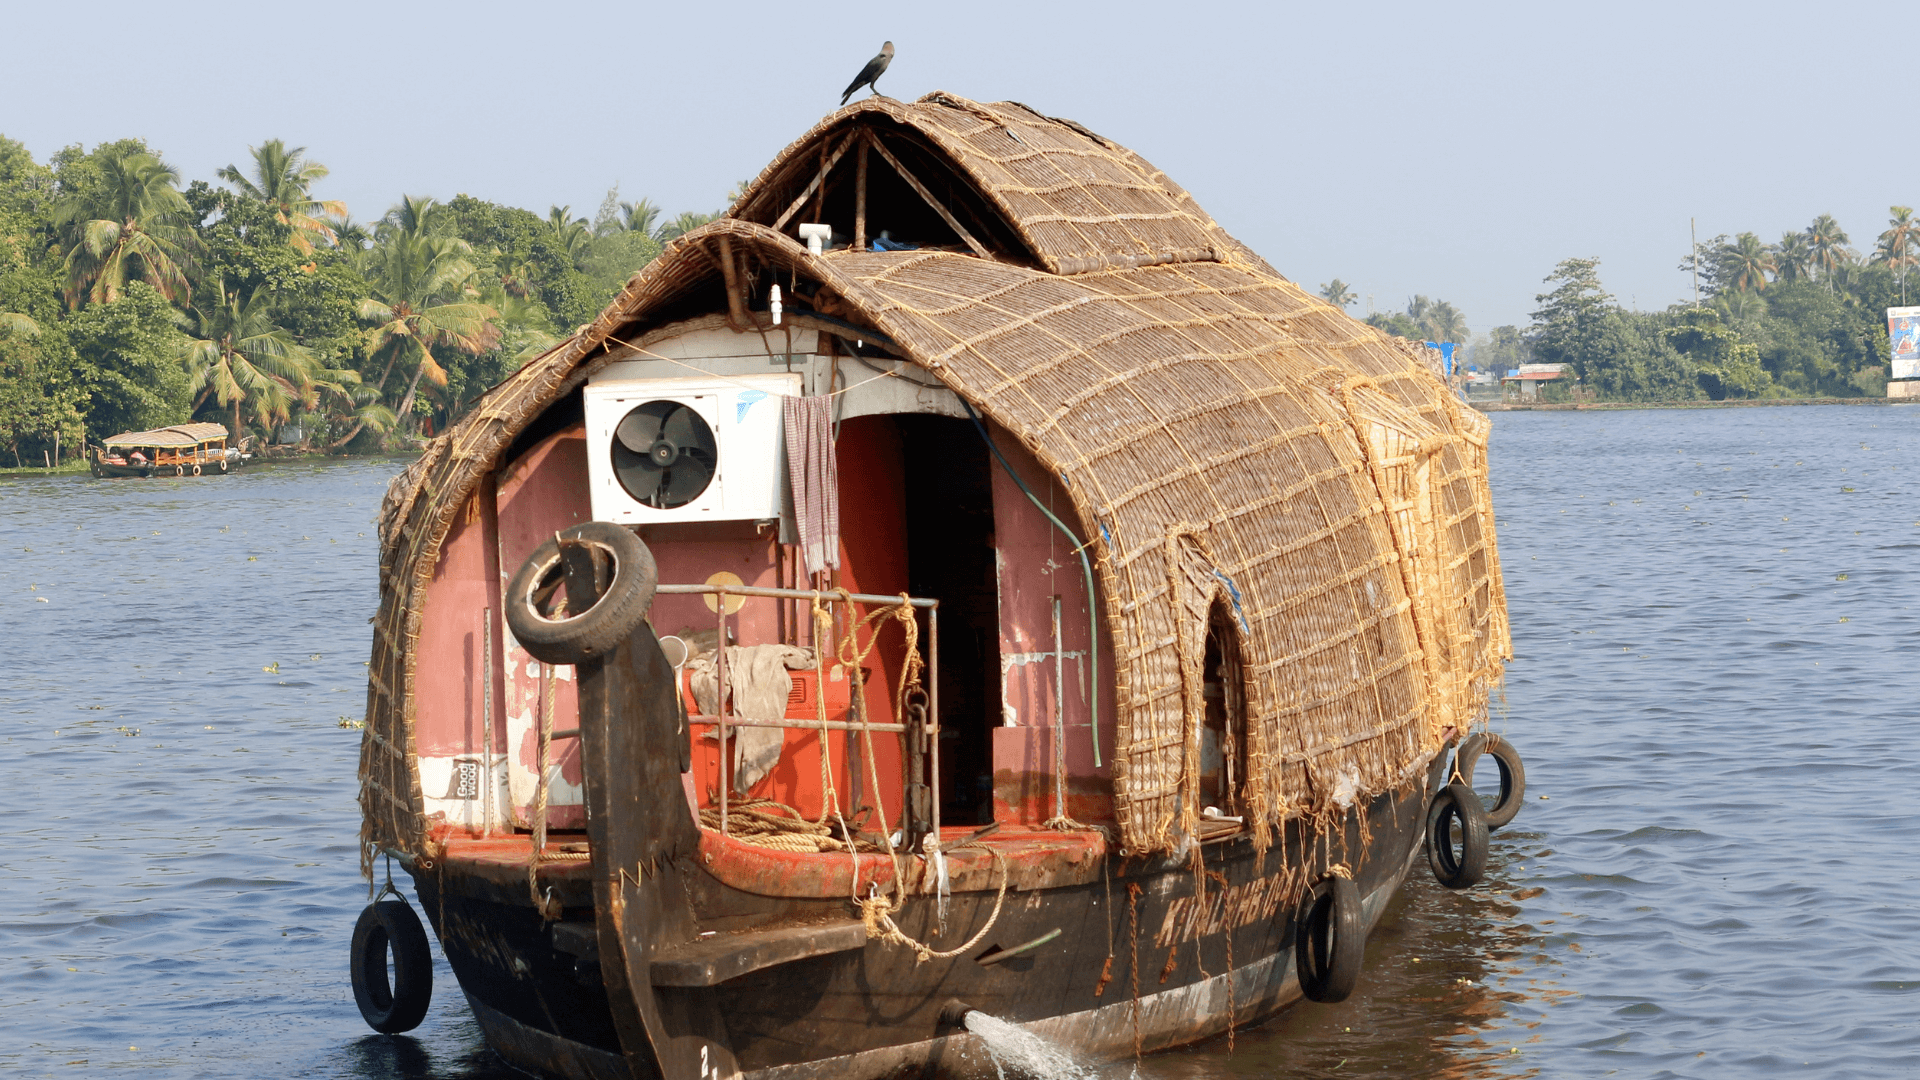 Bild eines stilvollen Hausbootes auf dem Wasser mit einer idyllischen Umgebung